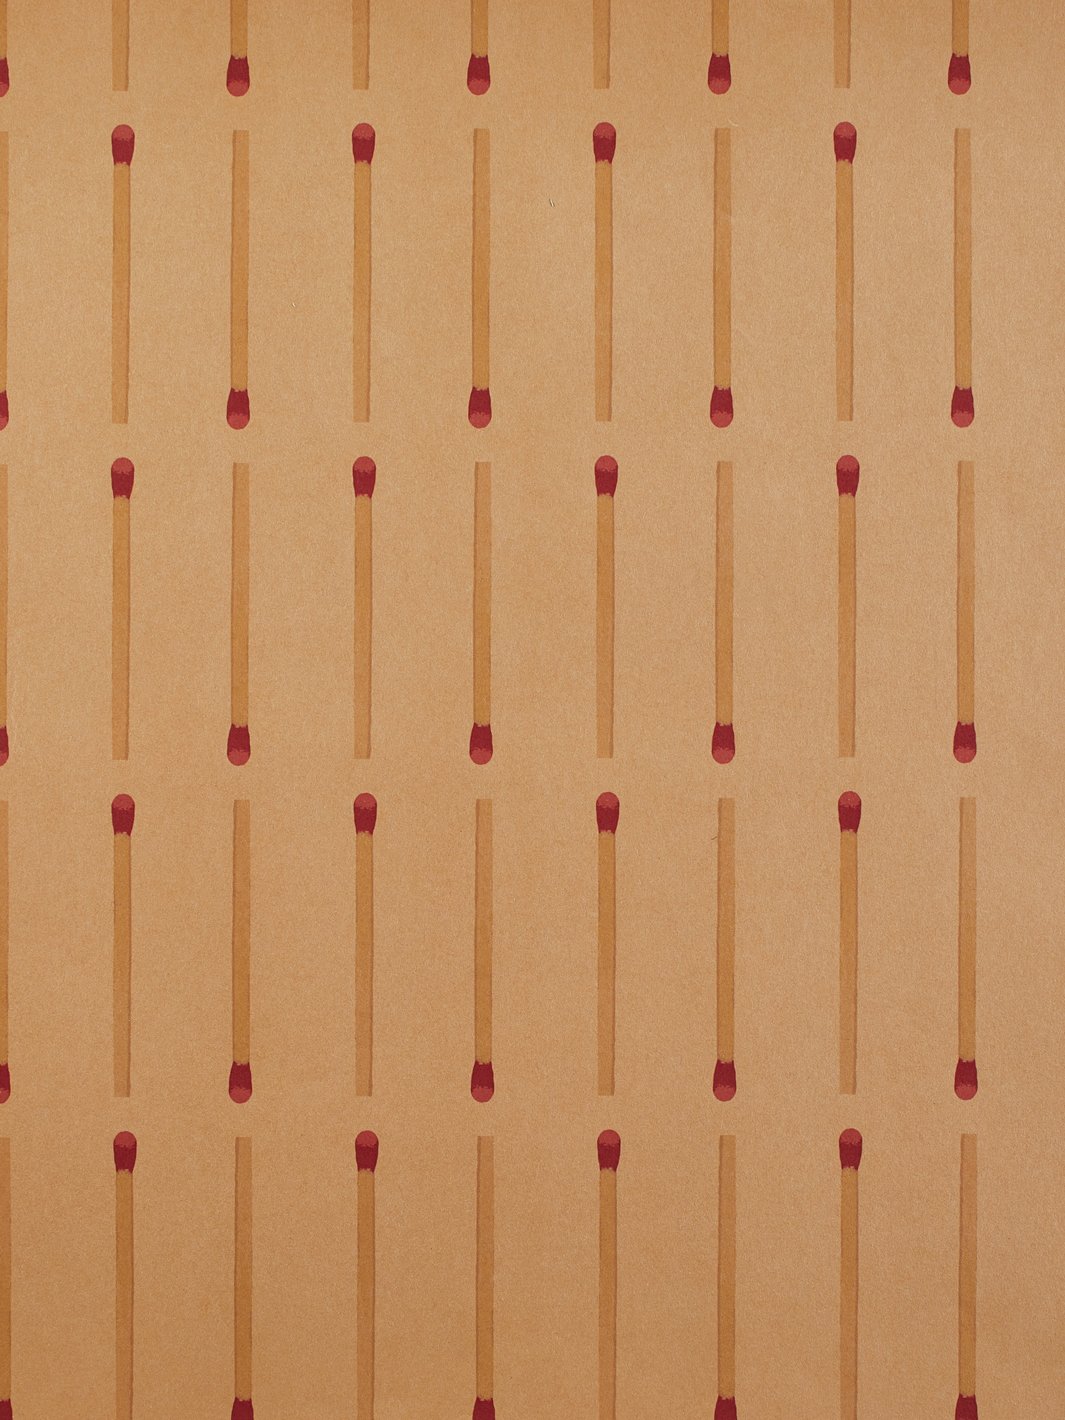 'Matchstick' Kraft' Wallpaper by Wallshoppe - Matchstick